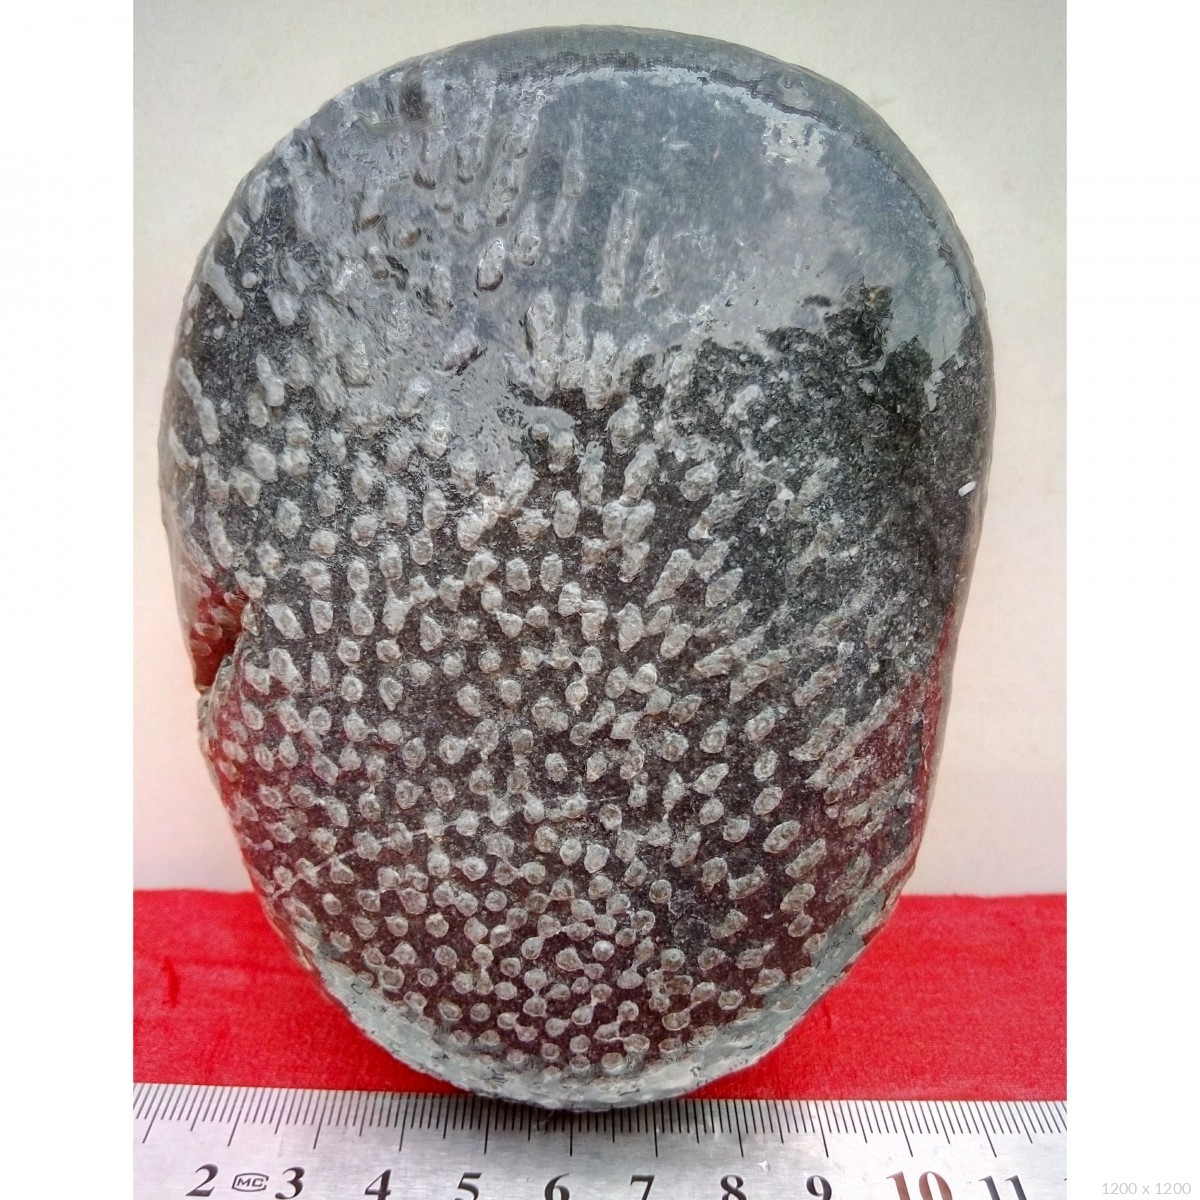 一千万的珊瑚虫化石图片